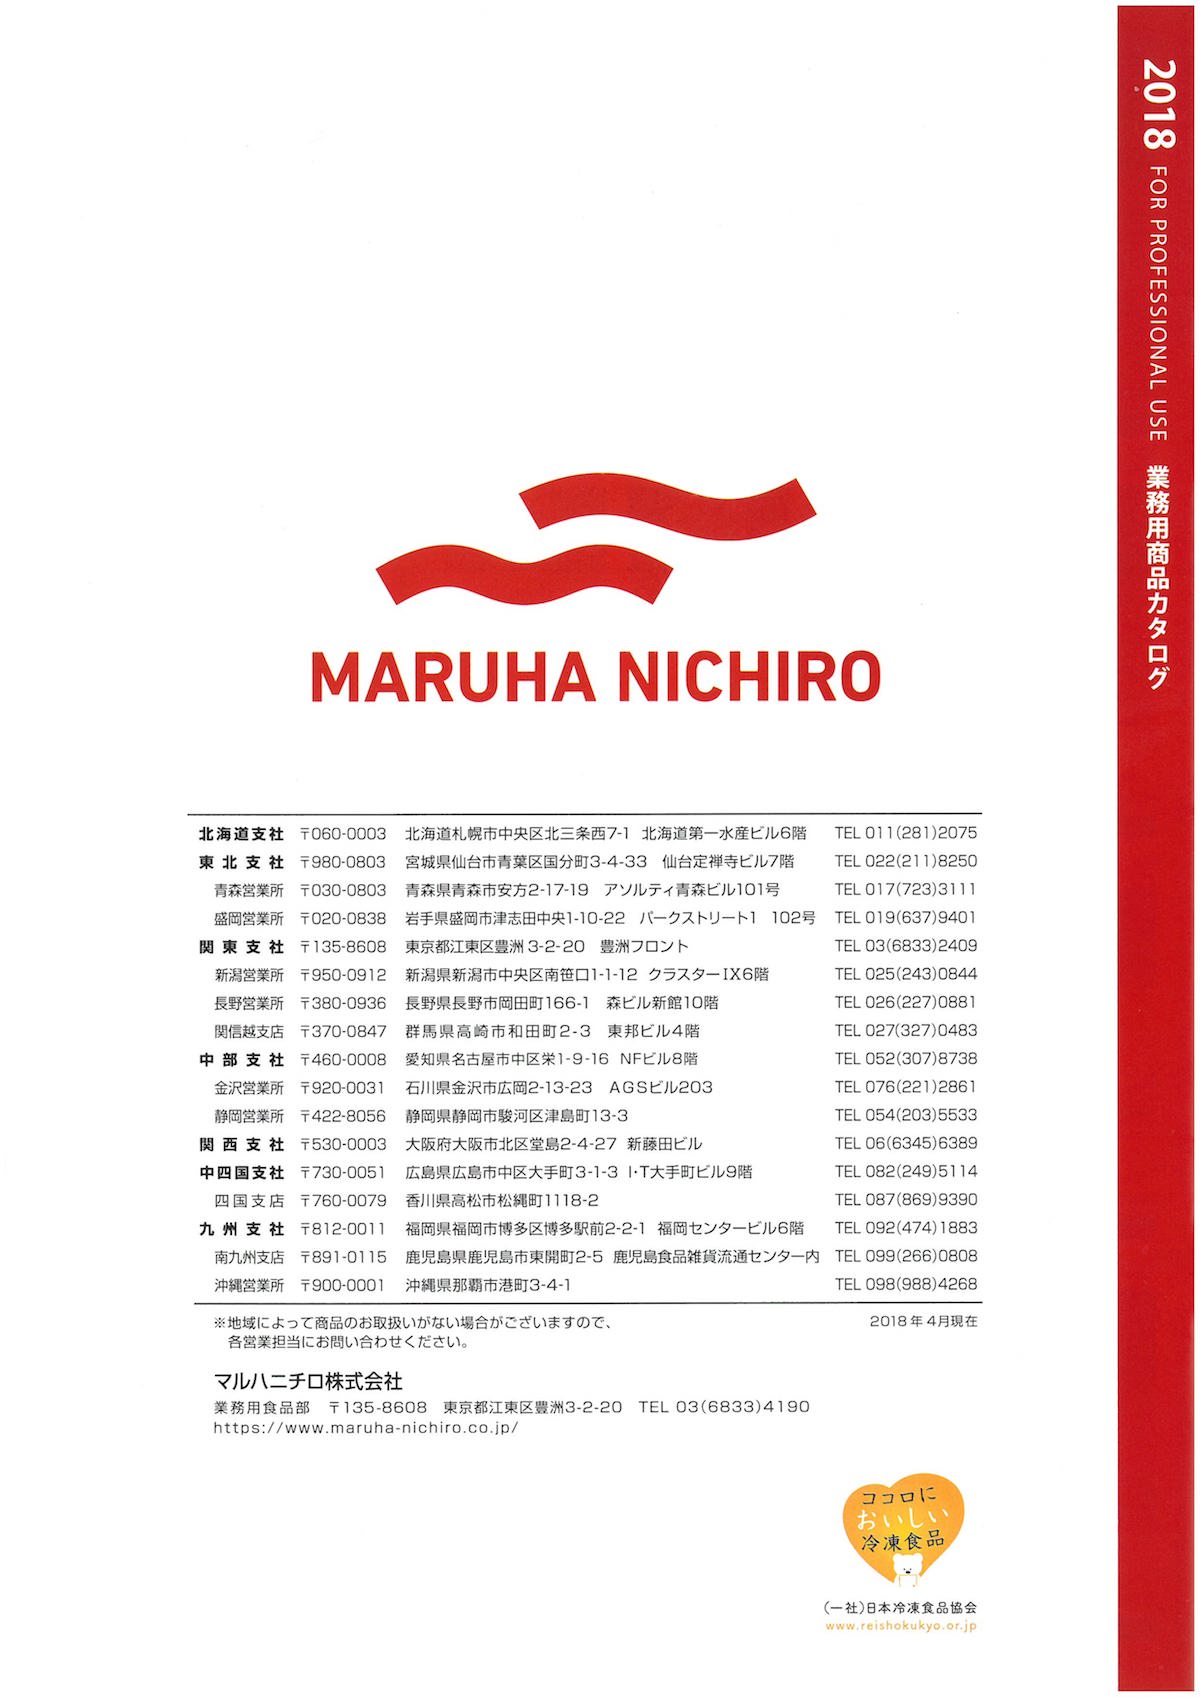 マルハニチロ　2018　業務用商品カタログ